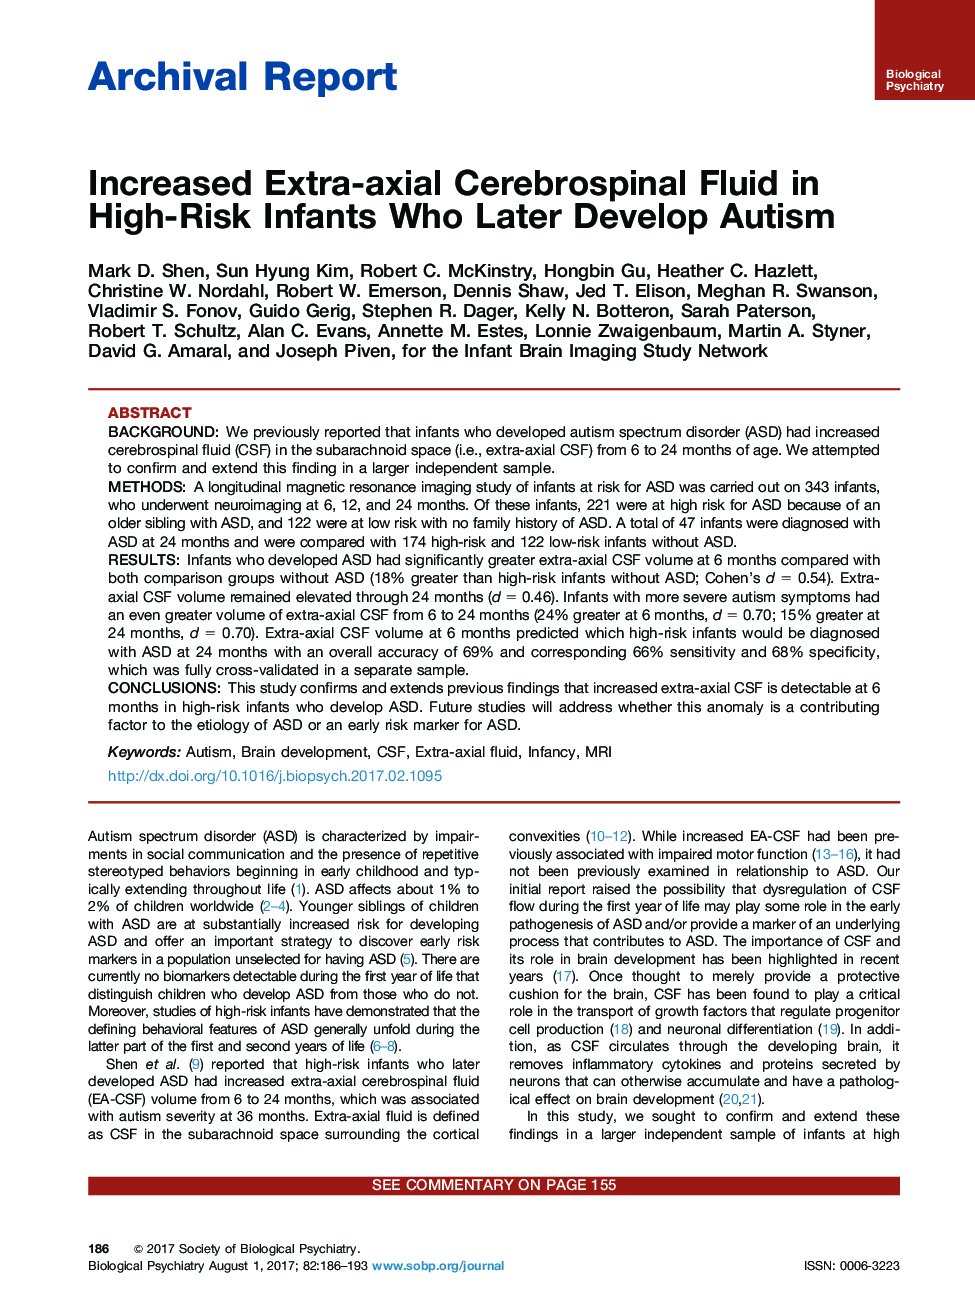 گزارش بایگانی افزایش سیال مغزی فوقانی محوری در نوزادان پرخطر که بعدا اوتیسم را توسعه می دهند 